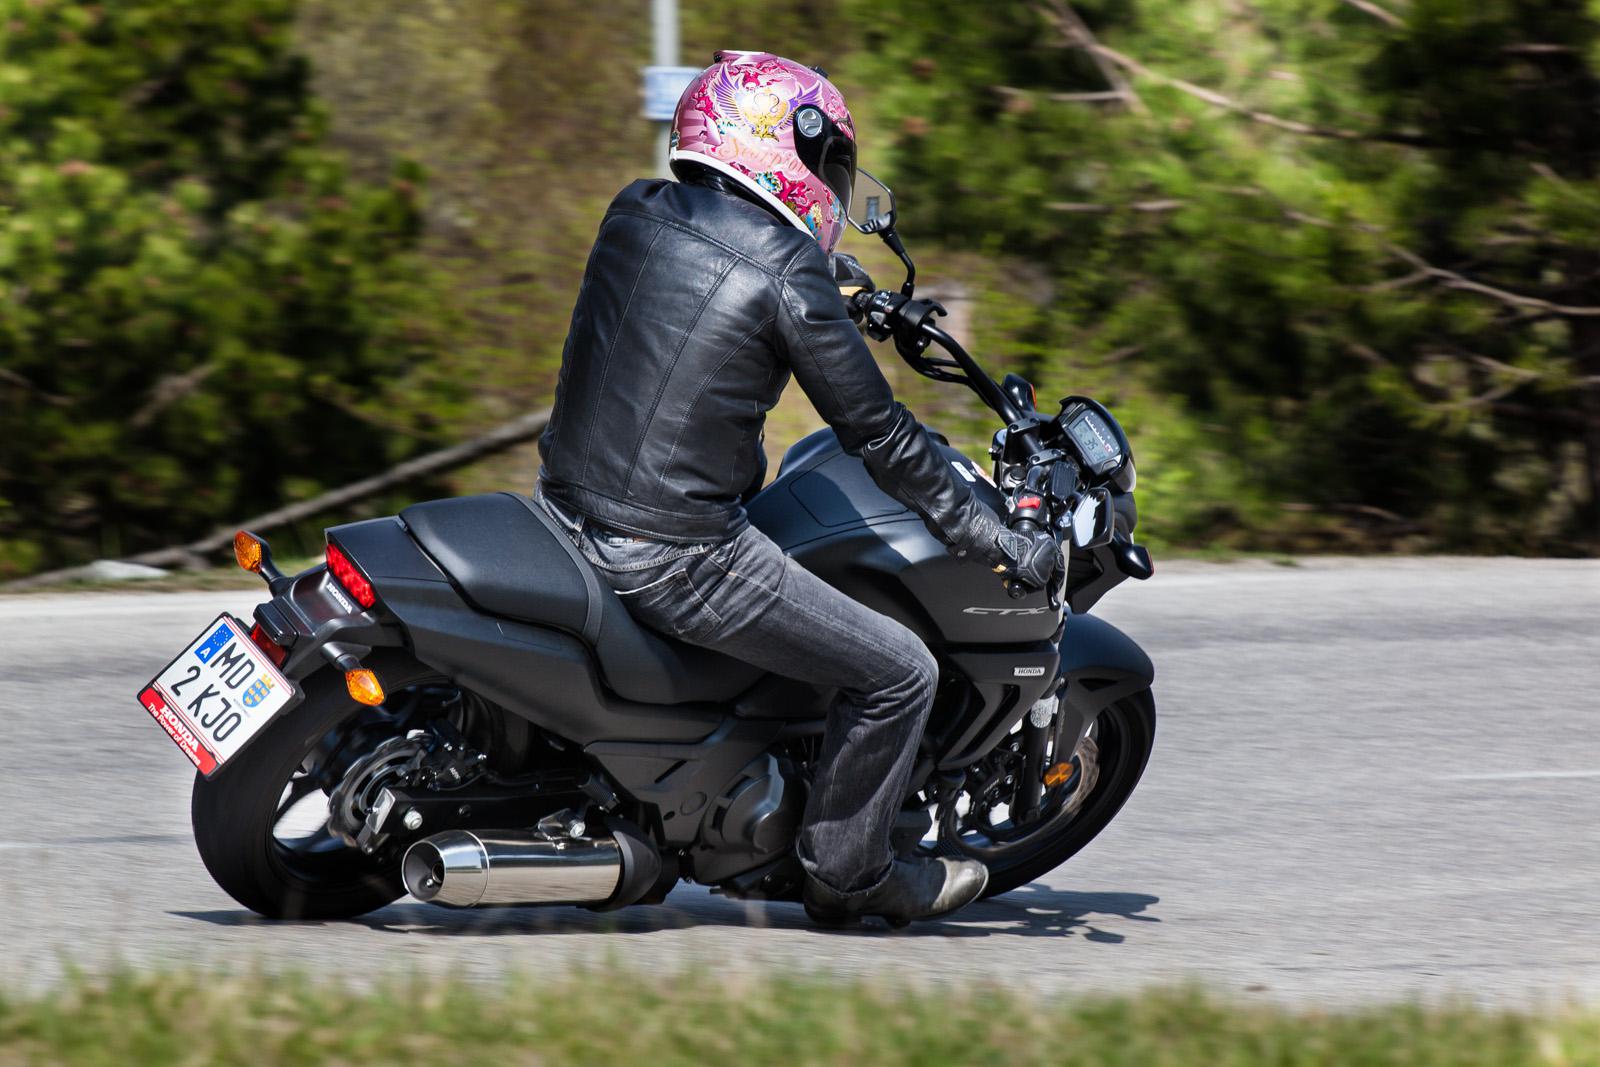 Тест-драйв мотоцикла honda ctx1300 от журналов "популярные моторы" и "5 колесо".